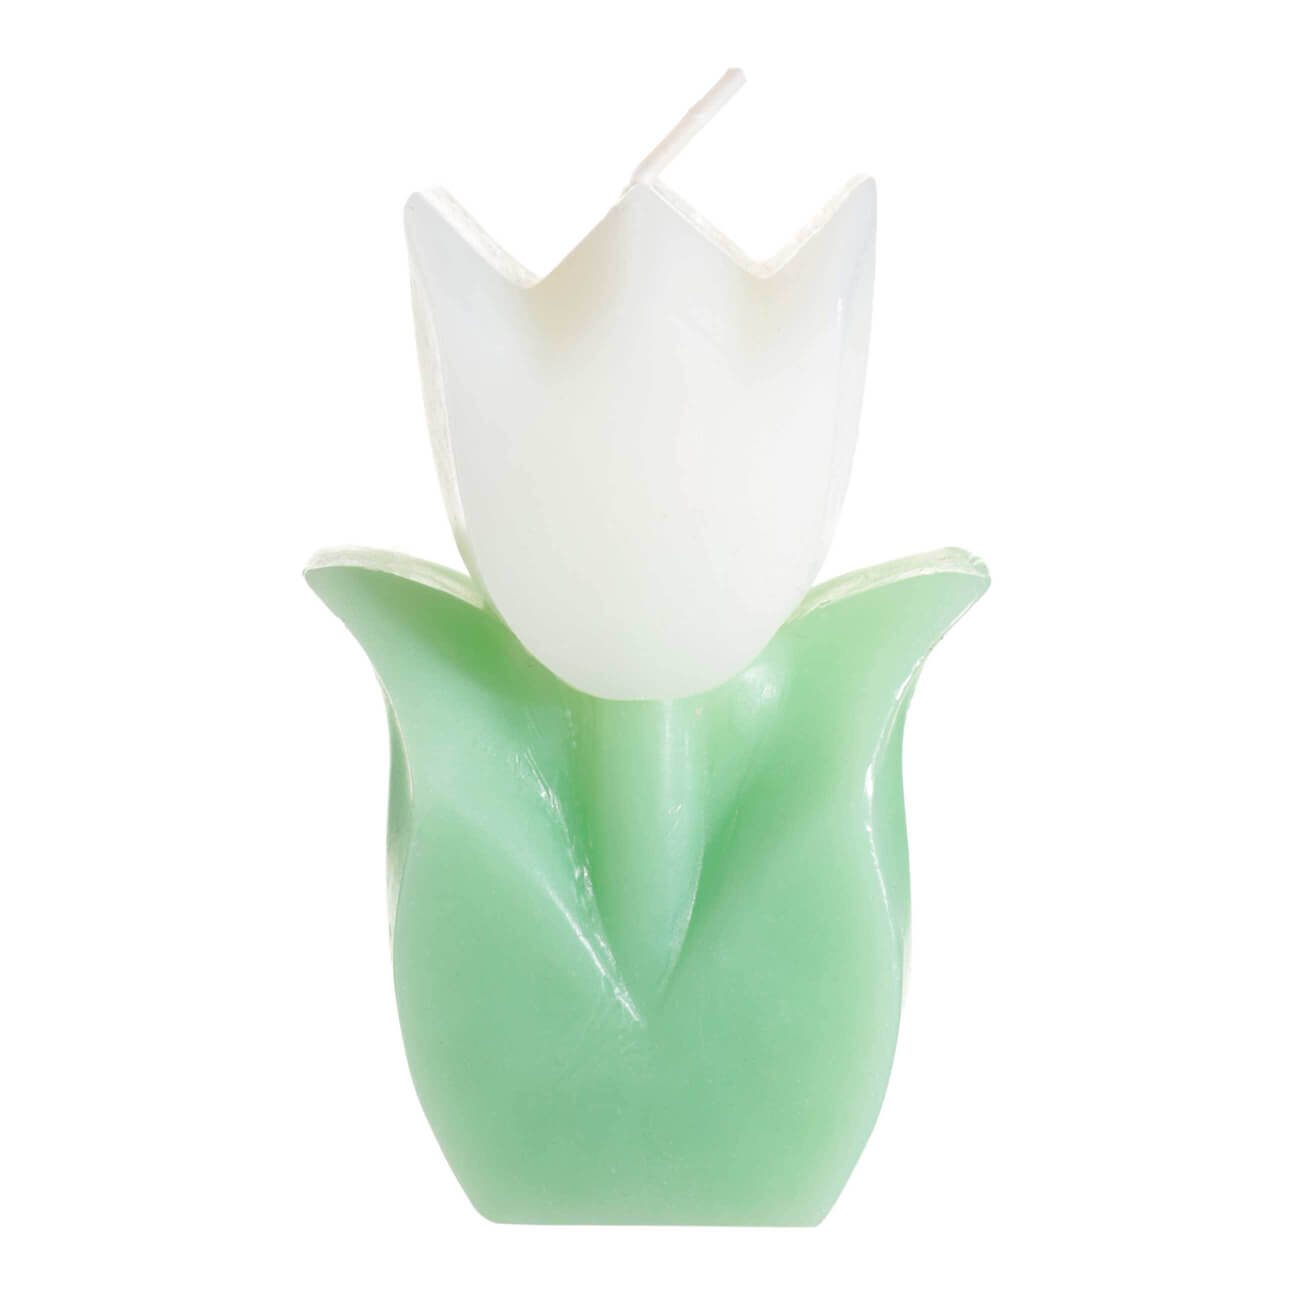 Свеча, 10 см, бело-зеленая, Тюльпан, Tulip garden свеча классическая 5х15 см зеленая